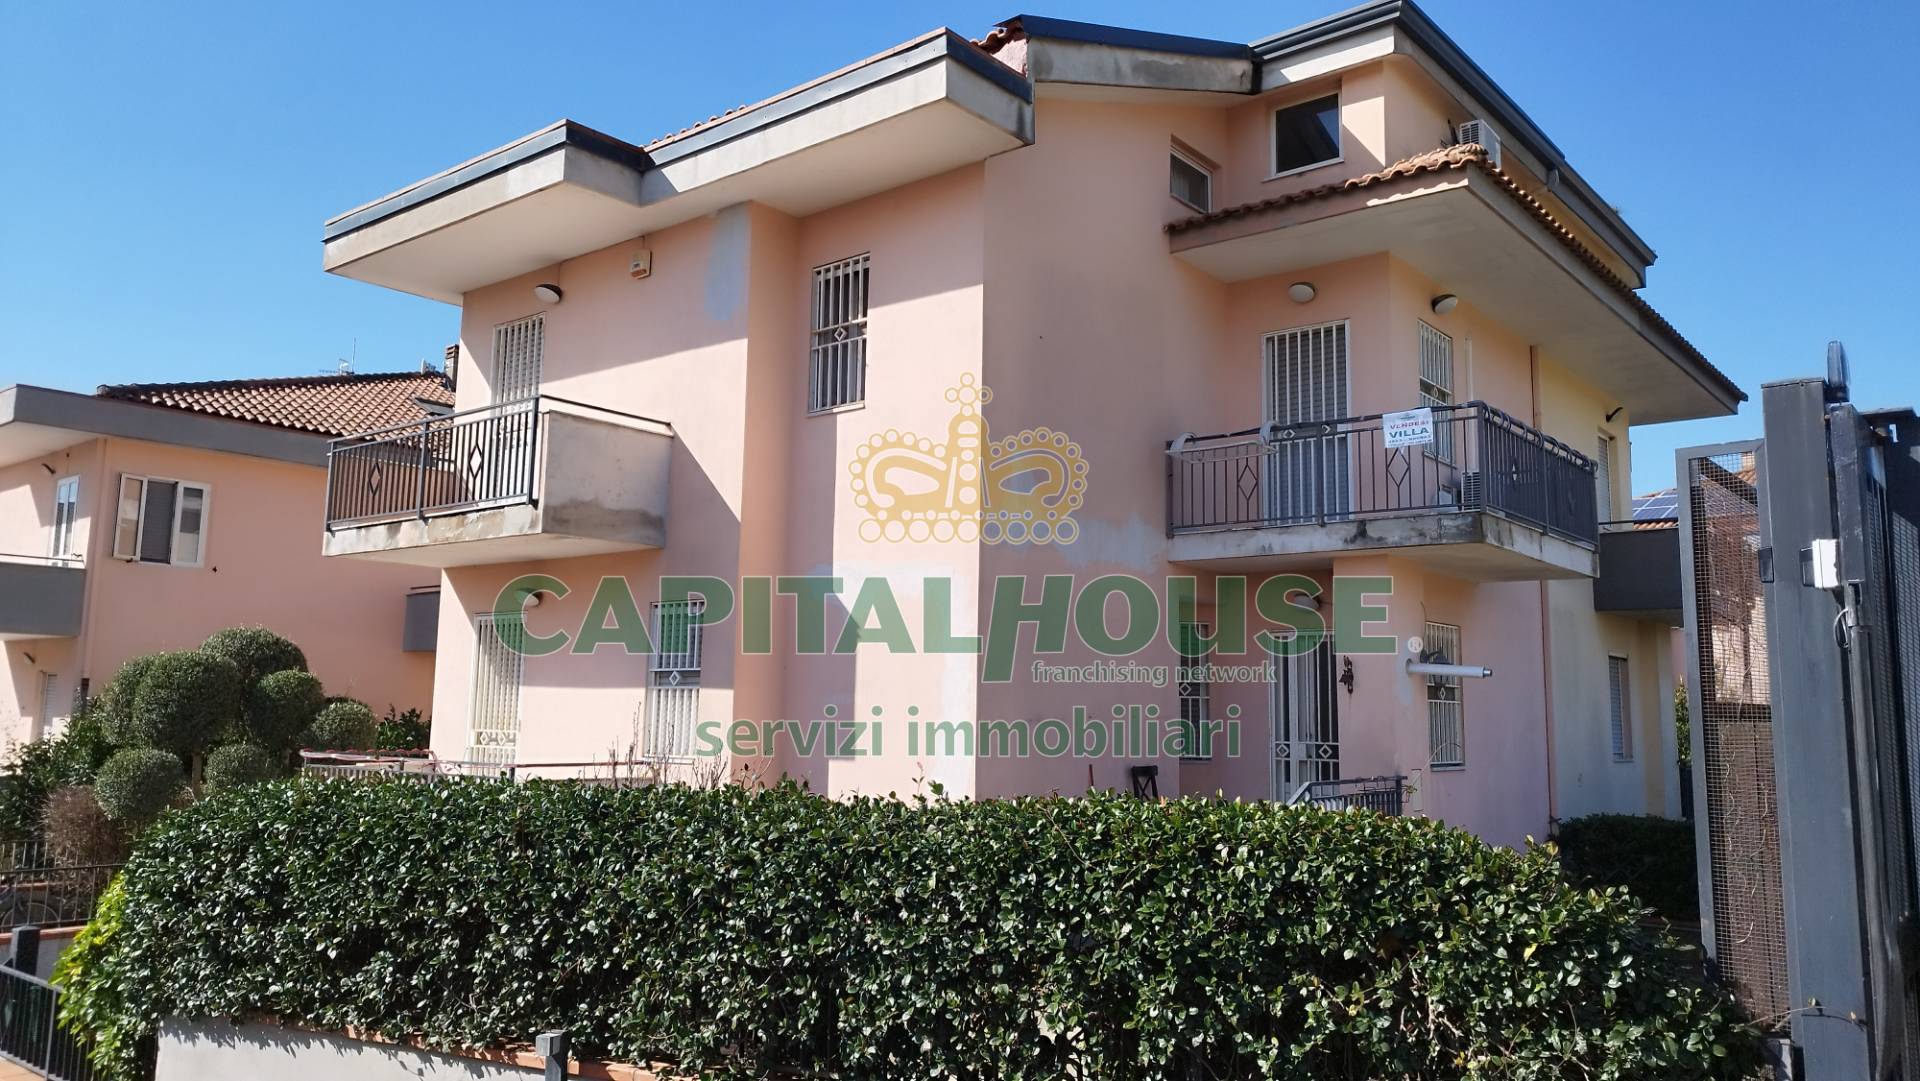 Villa in vendita a Pignataro Maggiore, 7 locali, prezzo € 144.000 | PortaleAgenzieImmobiliari.it